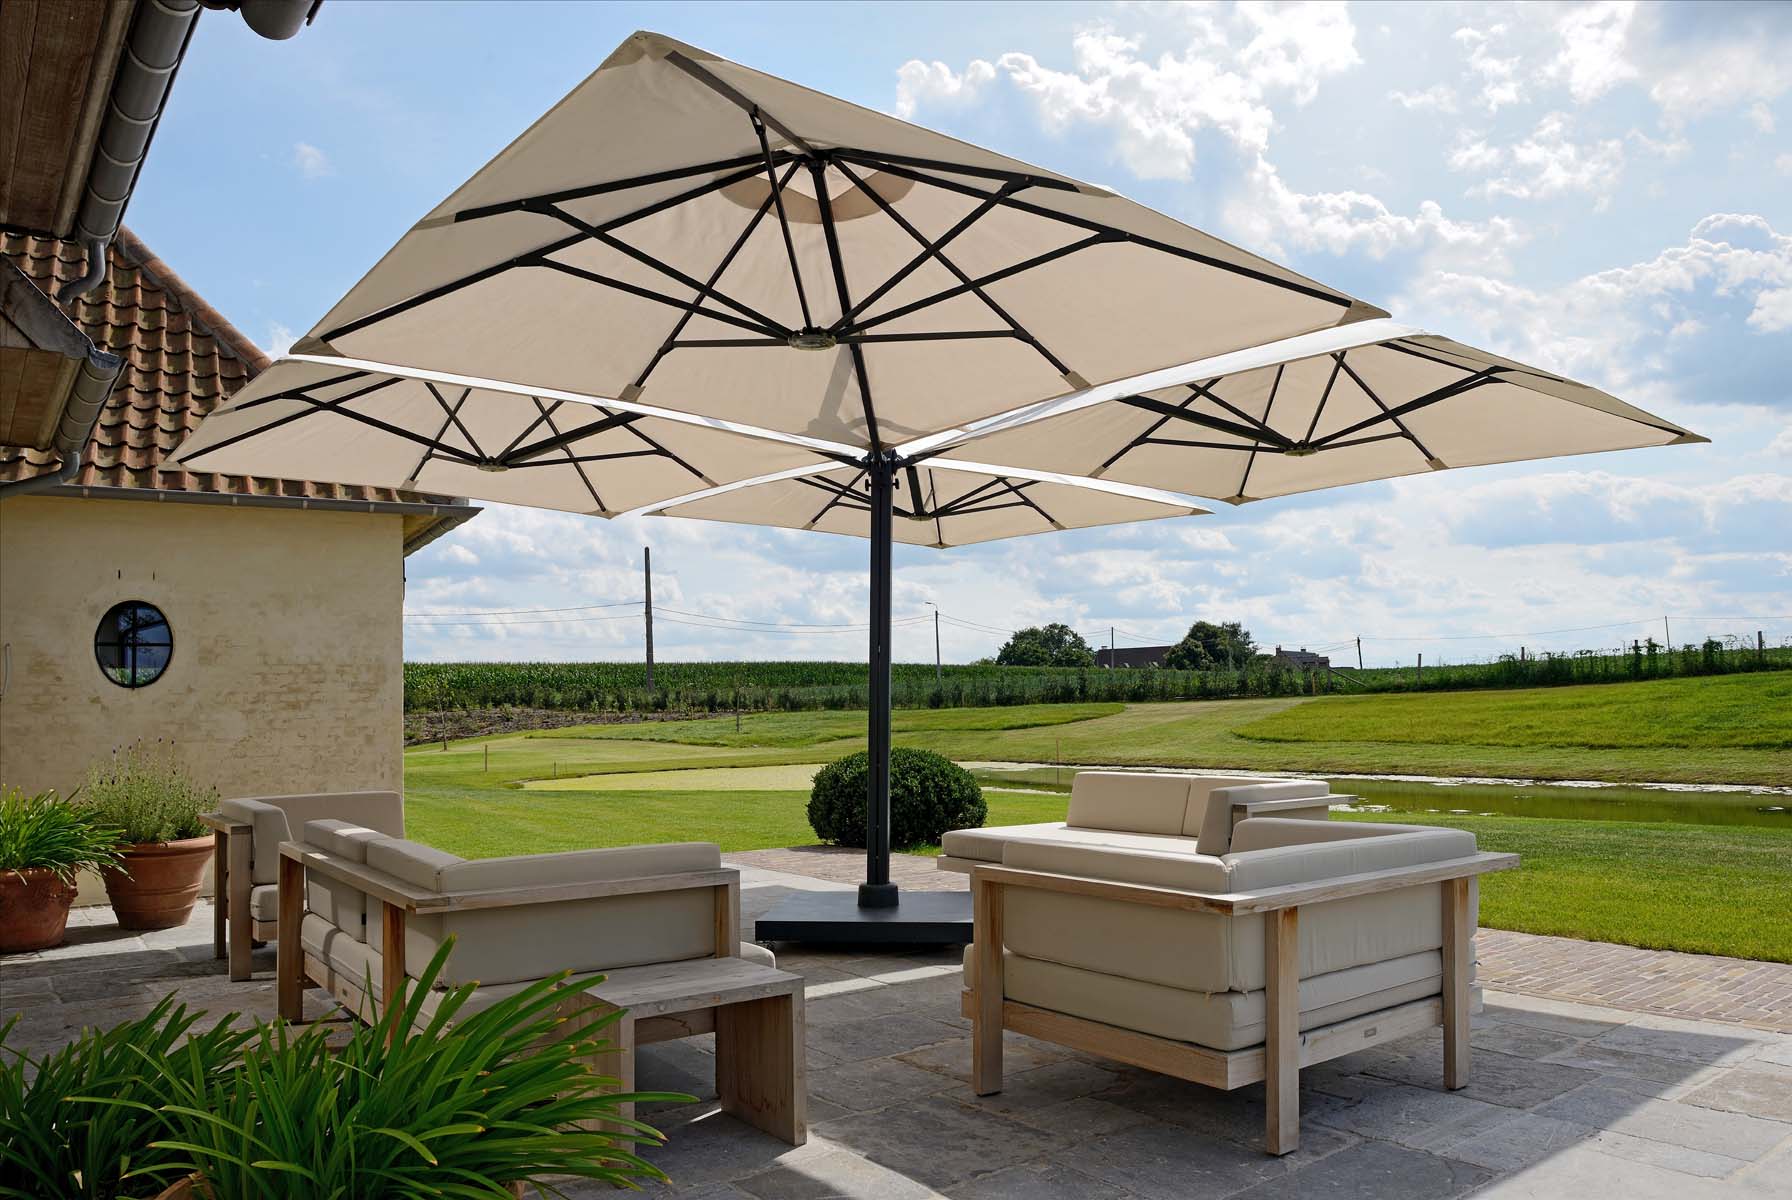 Parasol van het merk Prostor, beige van kleur, staat op een terras met uitzicht over velden, ideale zonwering buiten